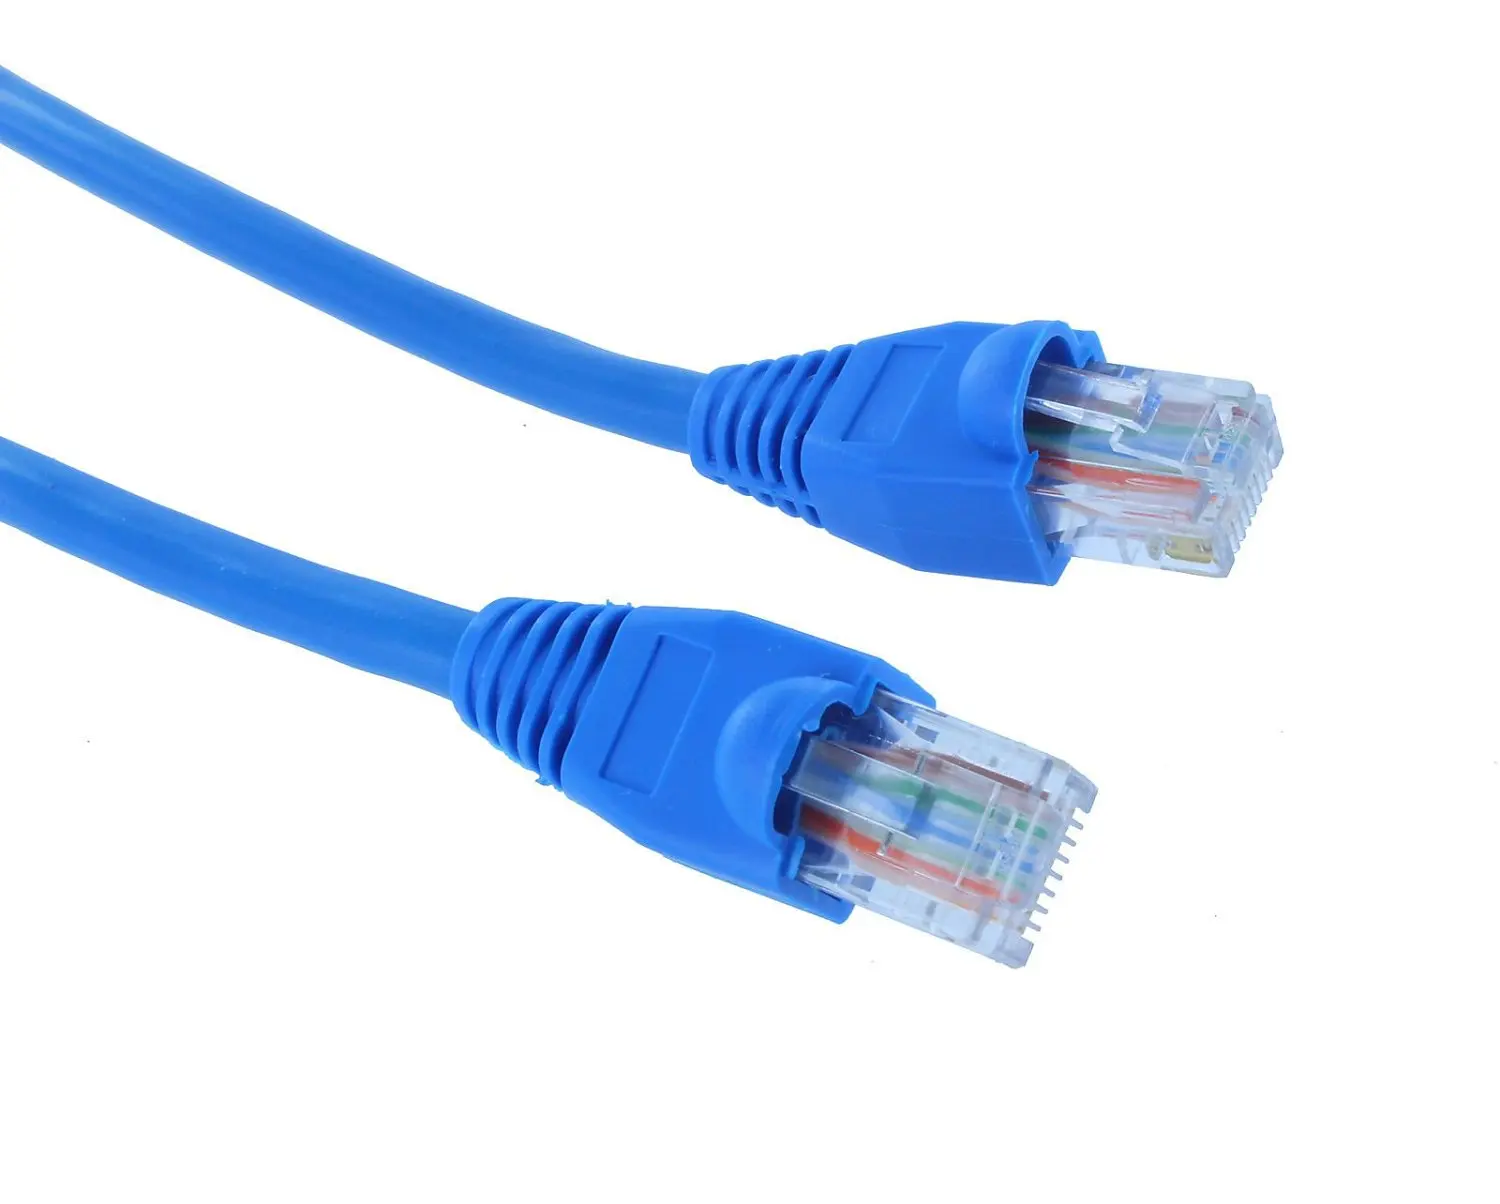 Сетевой кабель 5. Ethernet Cat 6. Интернет кабель Cat 6. Сетевой кабель Cross-over rj45. Кабель соединительный a02590.